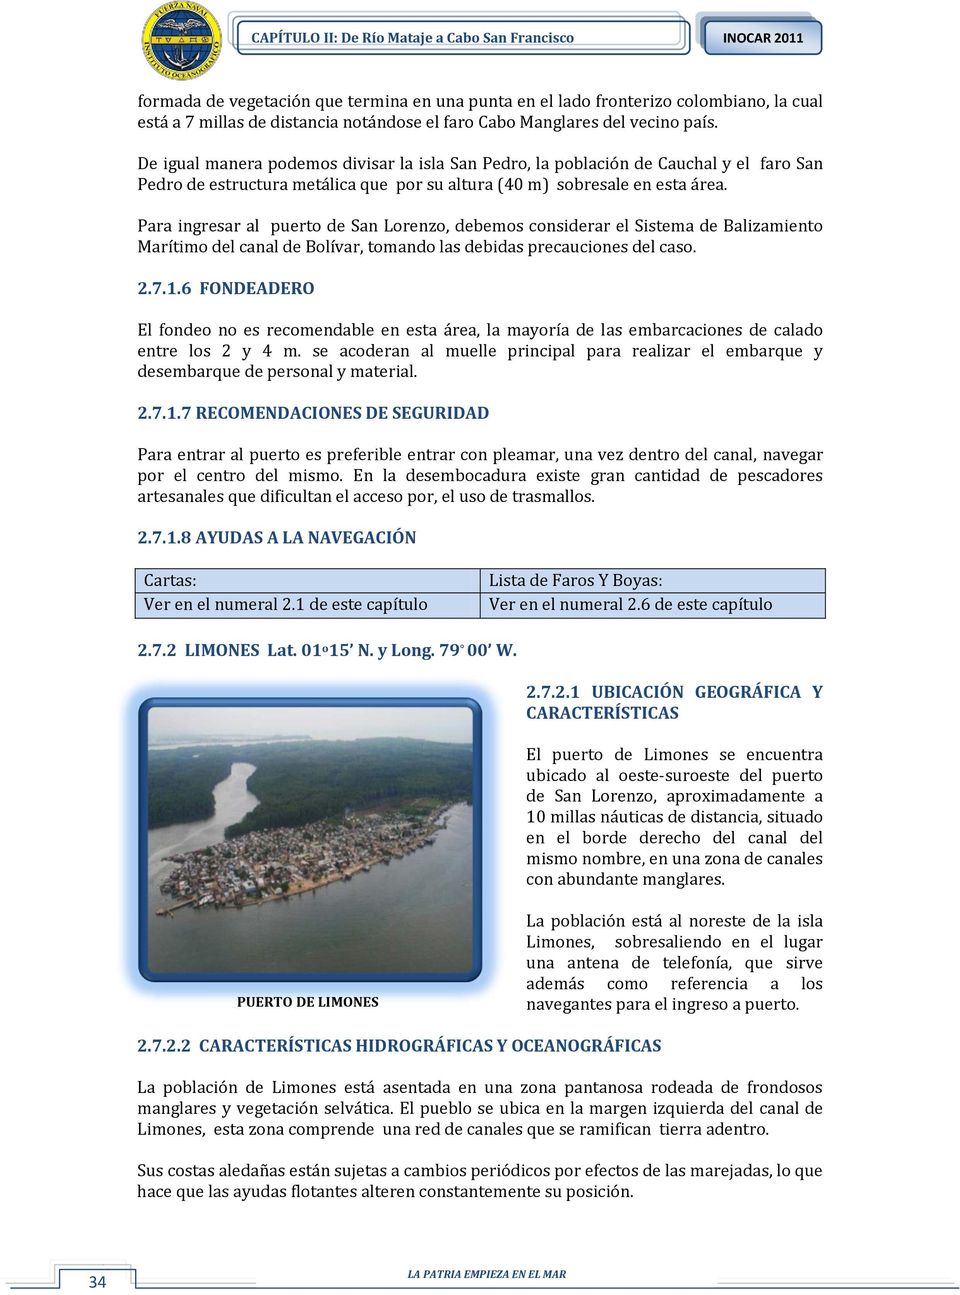 Para ingresar al puerto de San Lorenzo, debemos considerar el Sistema de Balizamiento Marítimo del canal de Bolívar, tomando las debidas precauciones del caso. 2.7.1.